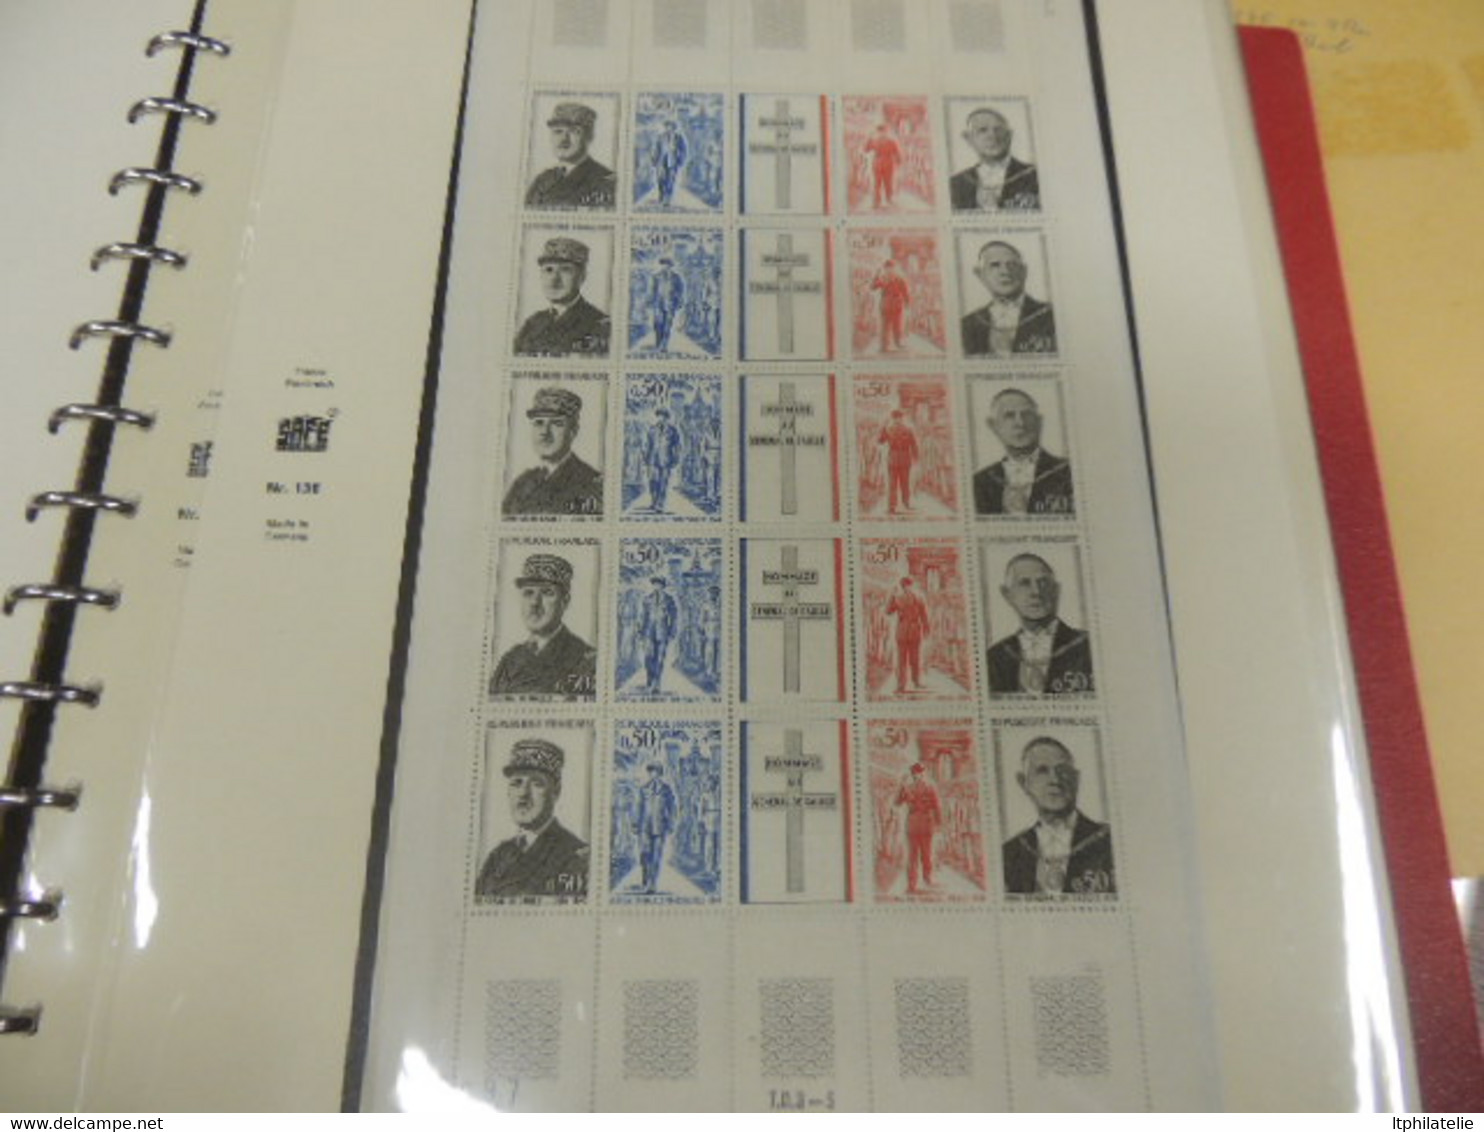 DESTOCK  Belle collection 1960 à 1975 assez complète qq carnets croix rouge SAFE